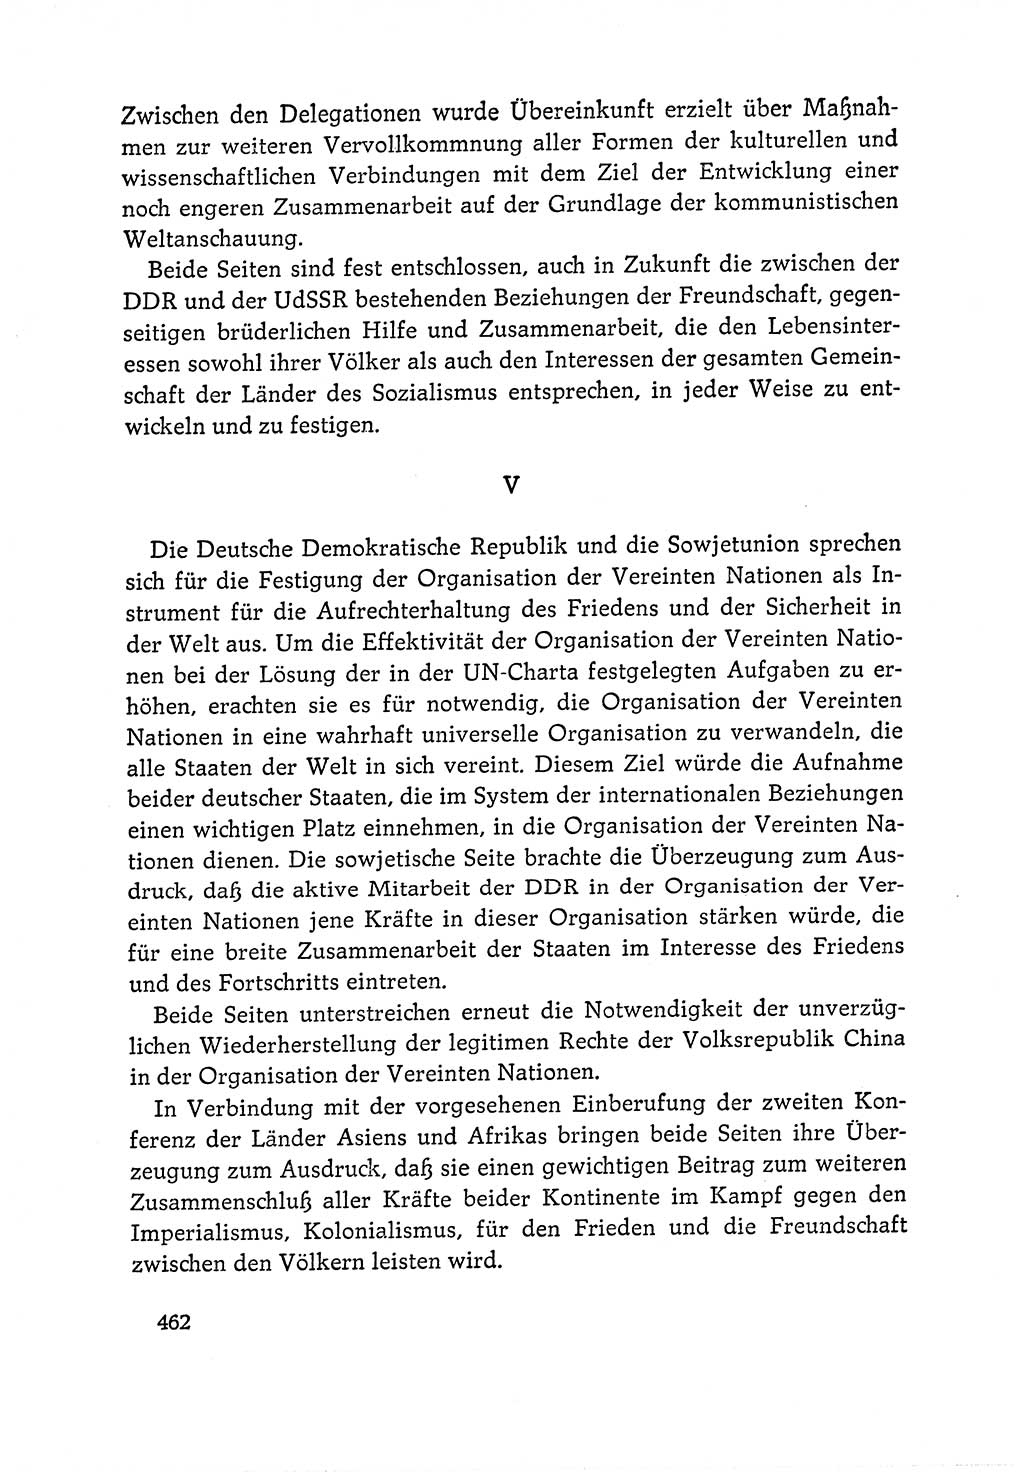 Dokumente der Sozialistischen Einheitspartei Deutschlands (SED) [Deutsche Demokratische Republik (DDR)] 1964-1965, Seite 462 (Dok. SED DDR 1964-1965, S. 462)